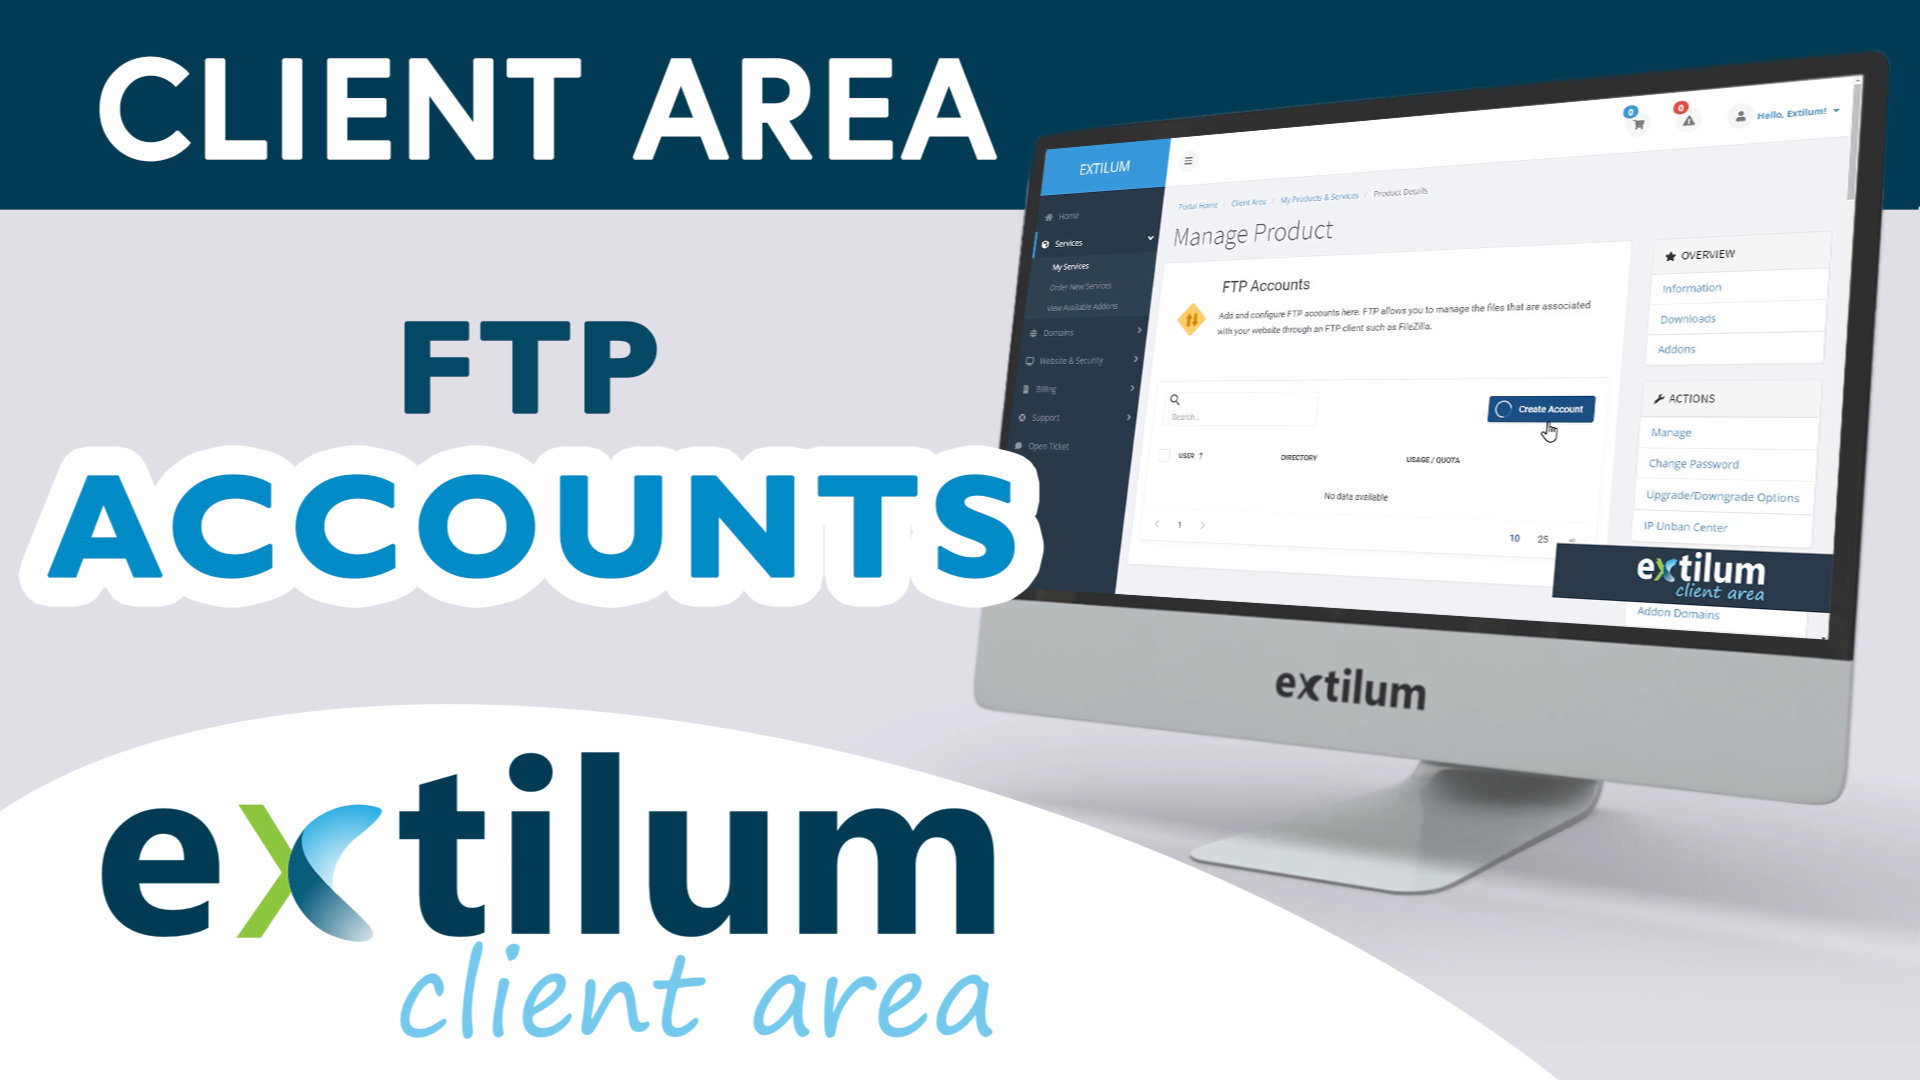 Extilum Client Area - FTP Accounts